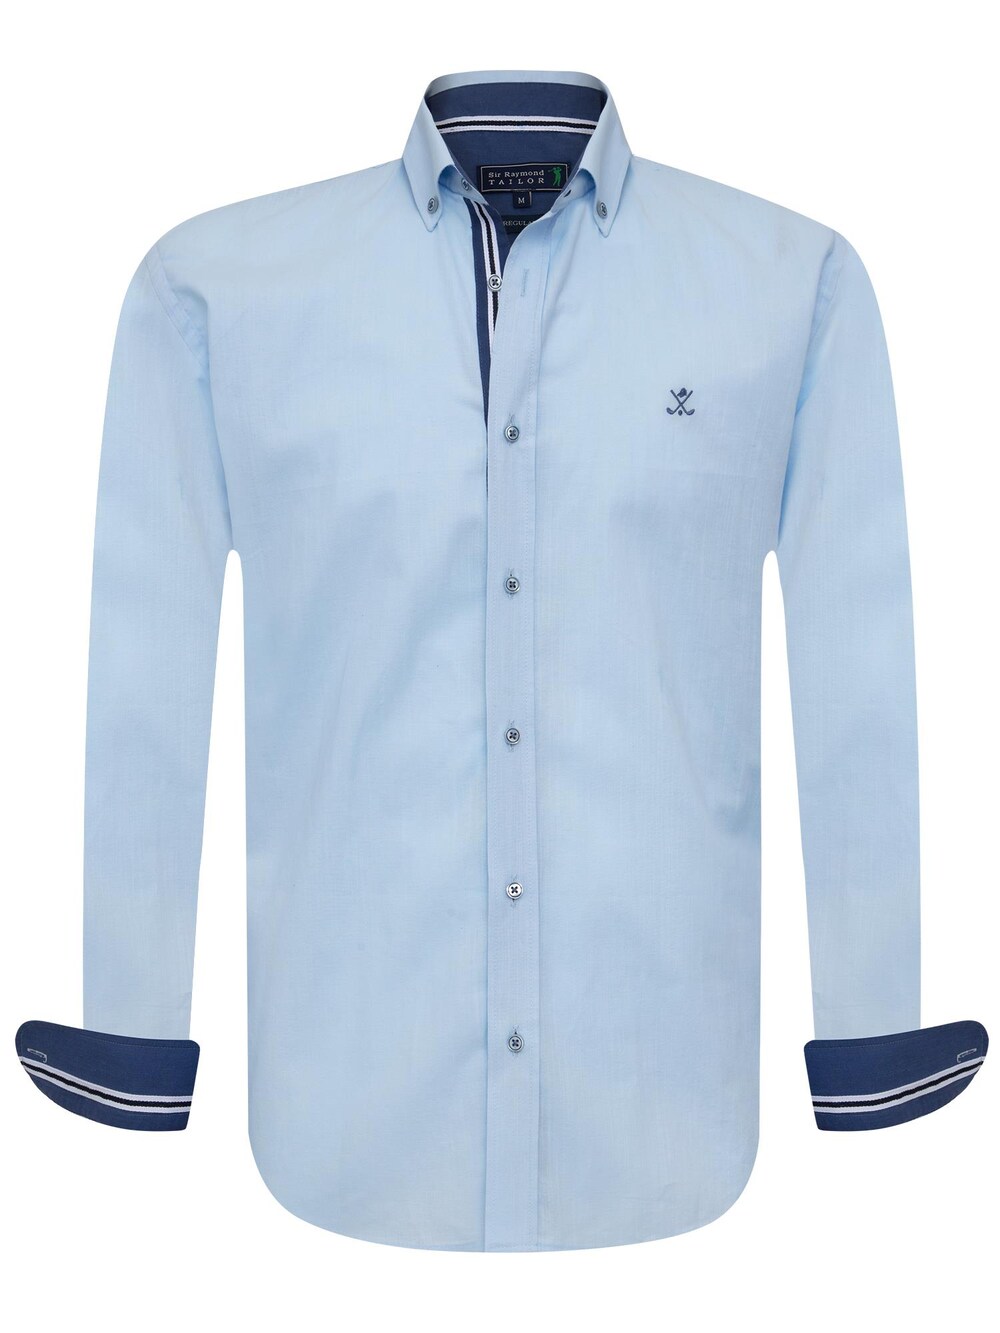 цена Рубашка на пуговицах стандартного кроя Sir Raymond Tailor Patty, темно-синий/светло-голубой